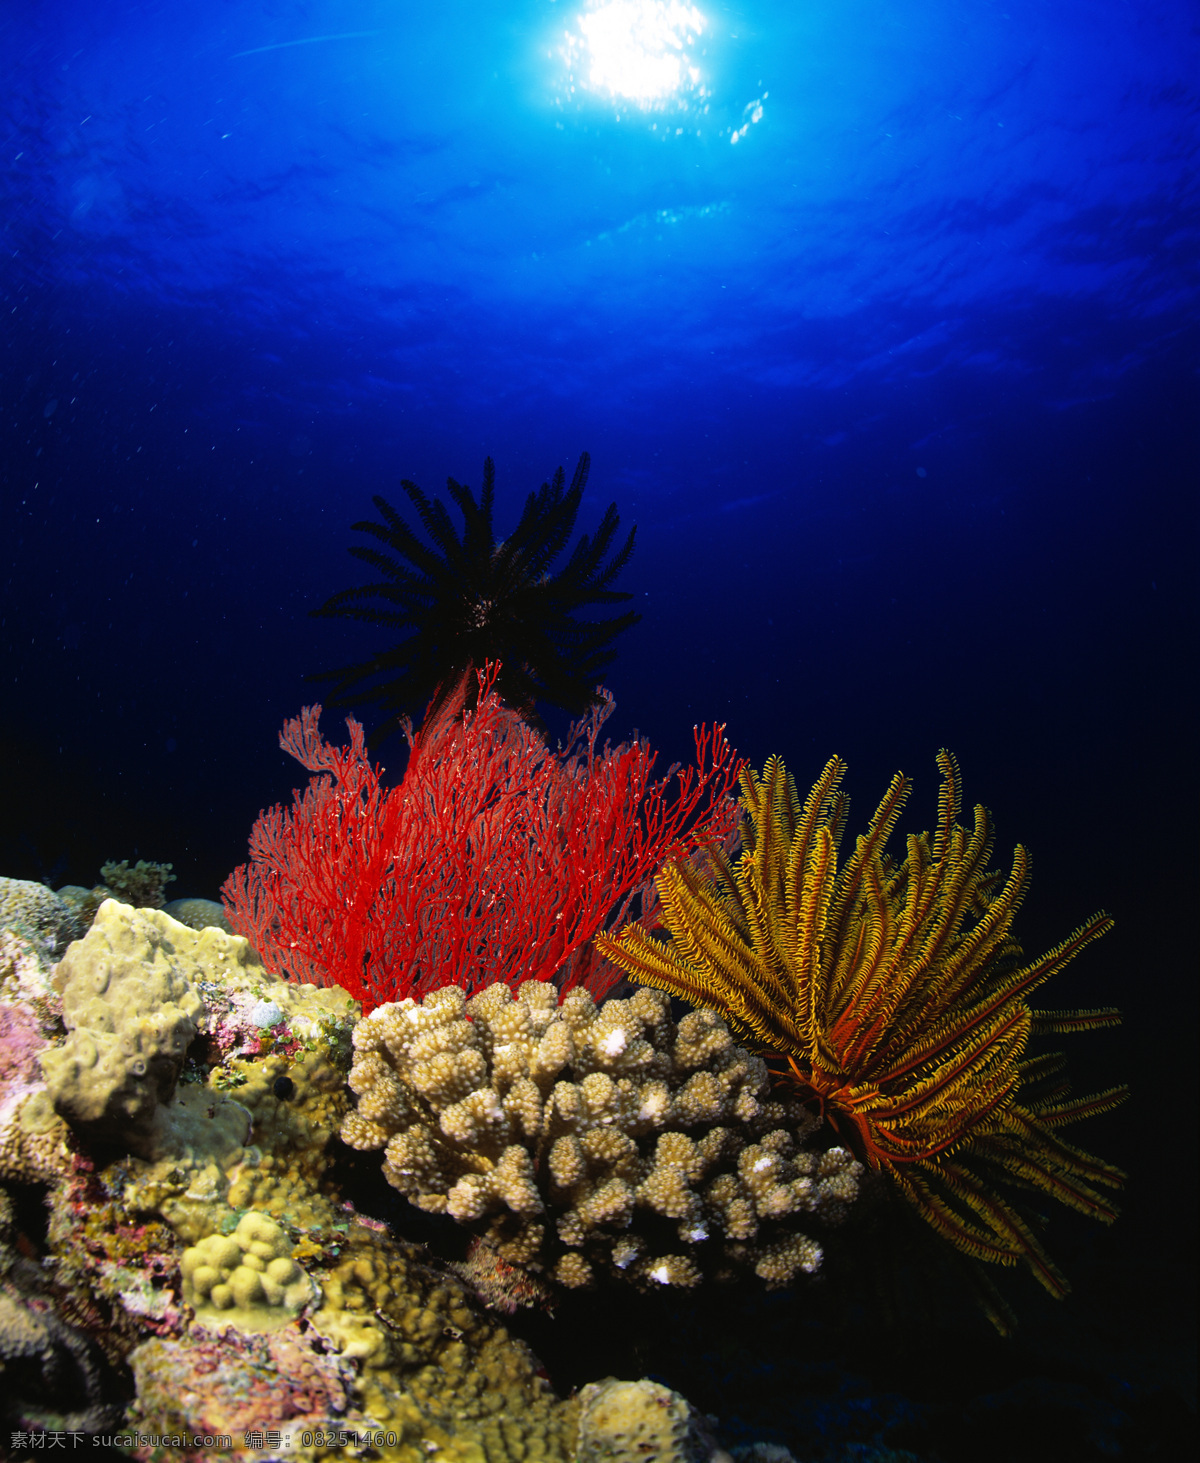 海底 美丽 珊瑚 海底世界 海洋馆 海水 深海 水族 海洋生物 生物世界 美丽风景 高清图片 大海图片 风景图片